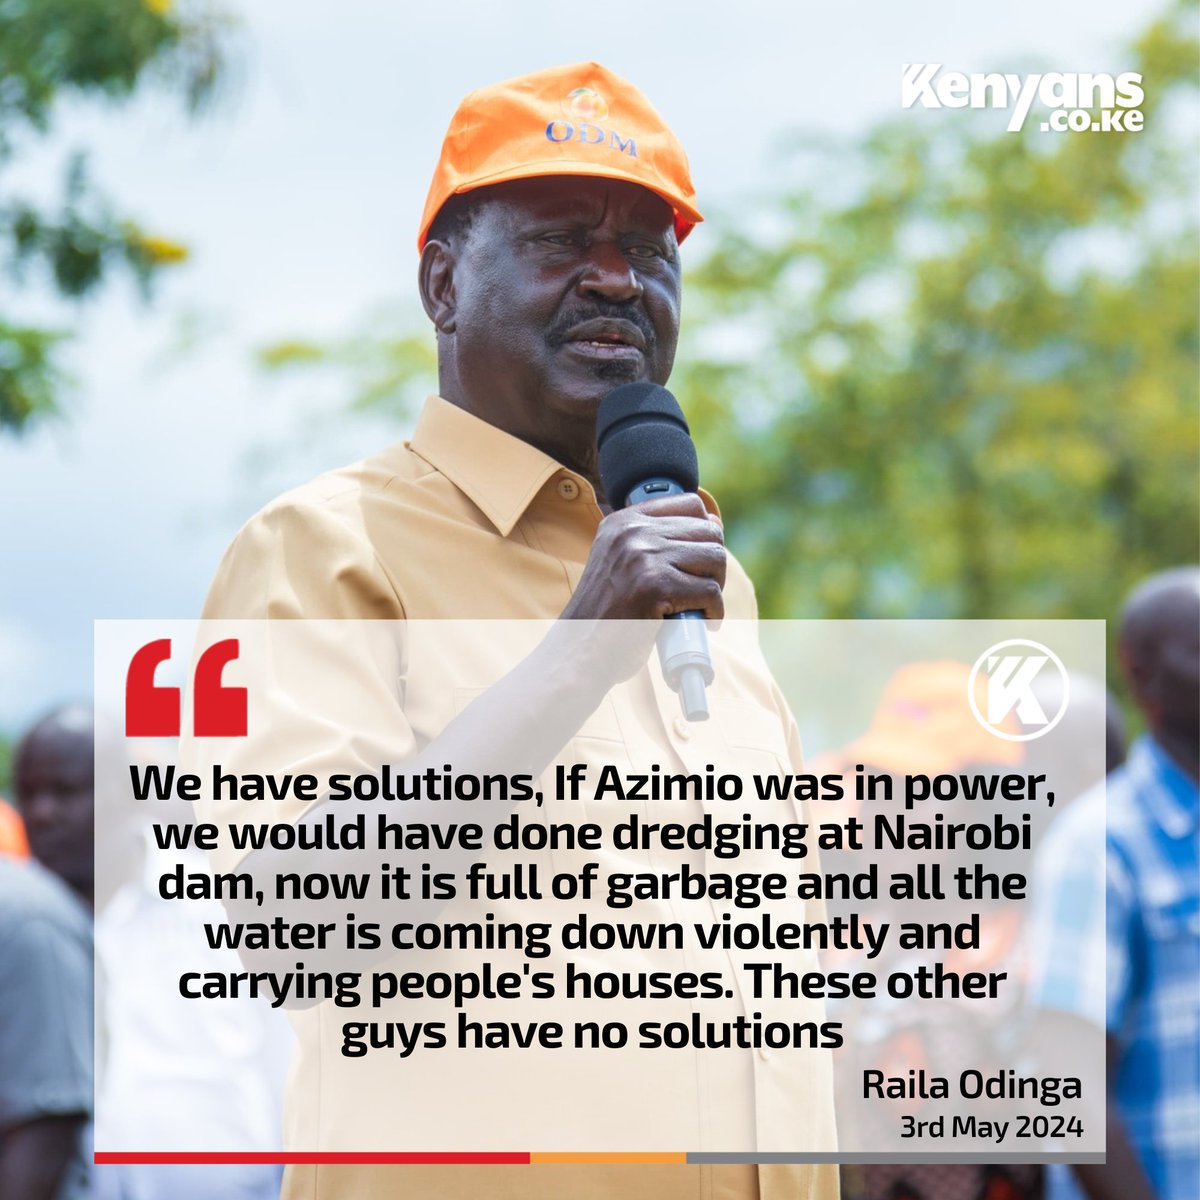 If Azimio was in power, we would have done dredging at Nairobi dam - Engineer Raila Odinga. Mngewacha Ruto aendelee kuuza kuku bwana.